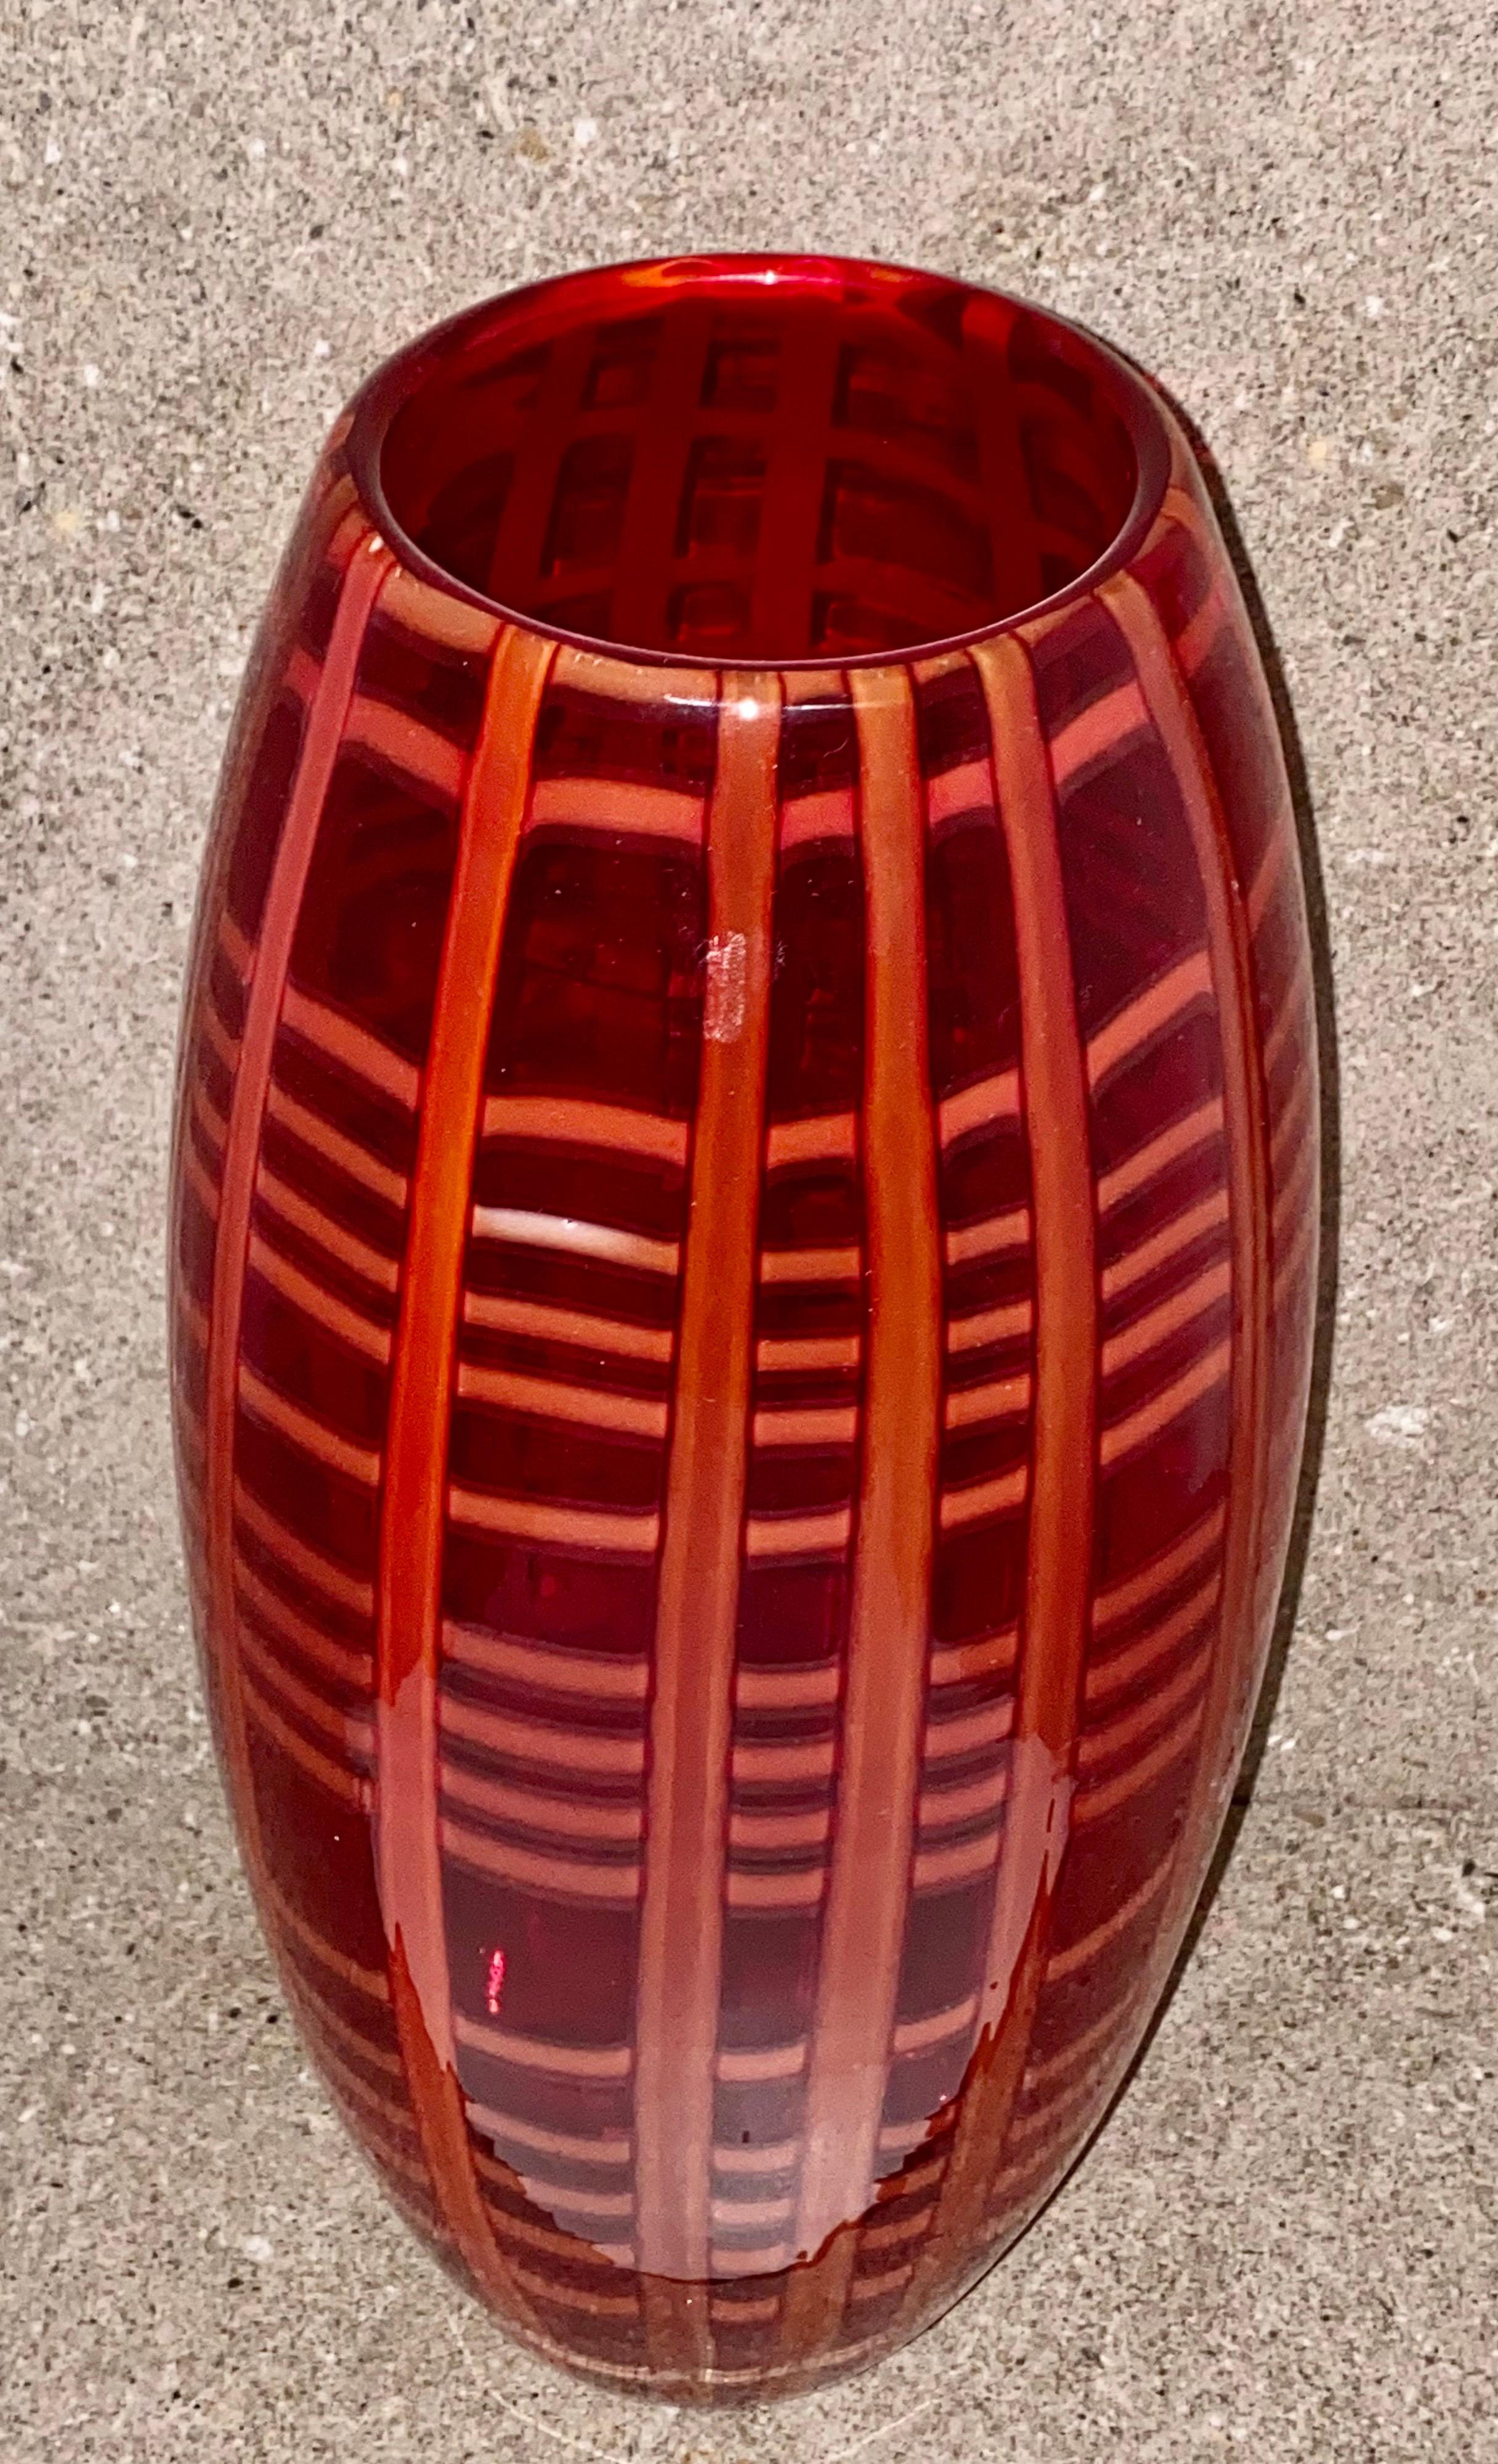 burberry vase